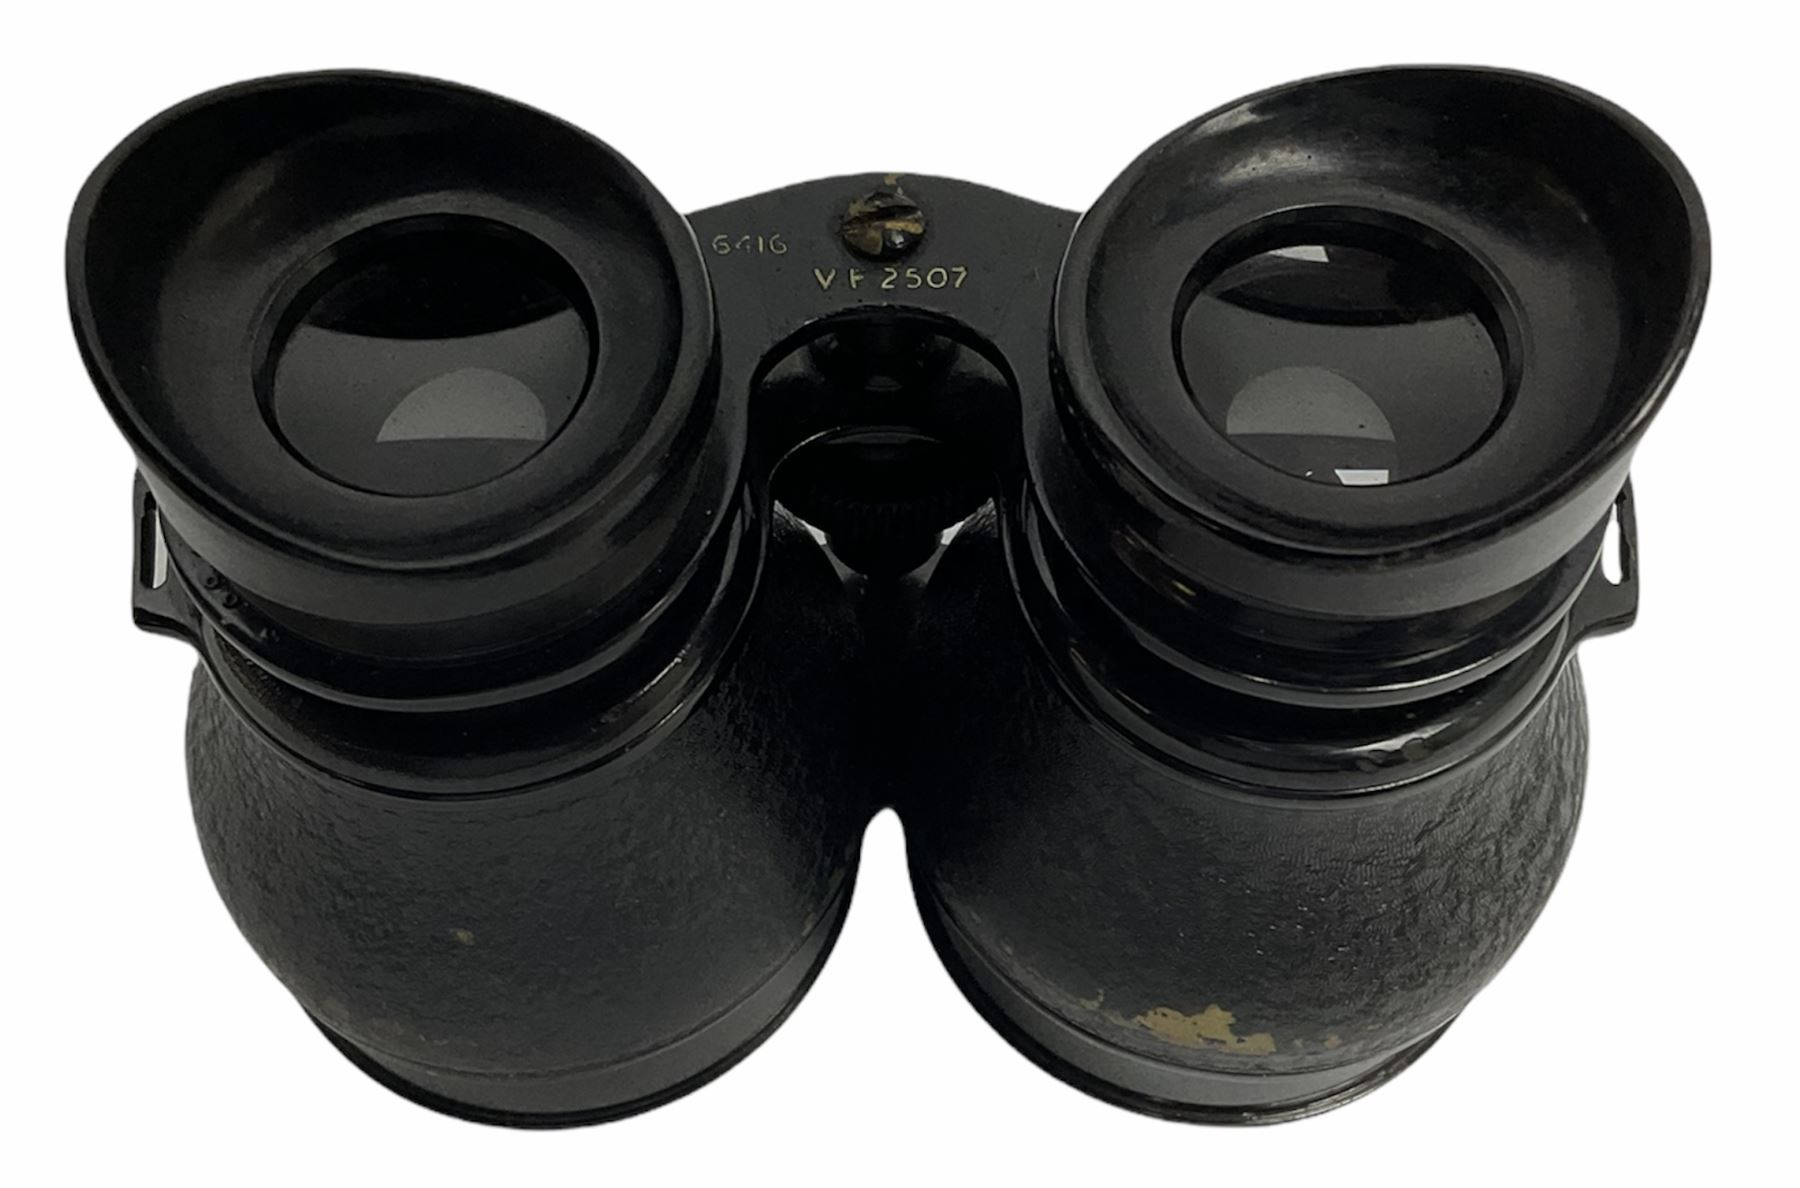 Pair of binoculars - Image 4 of 4